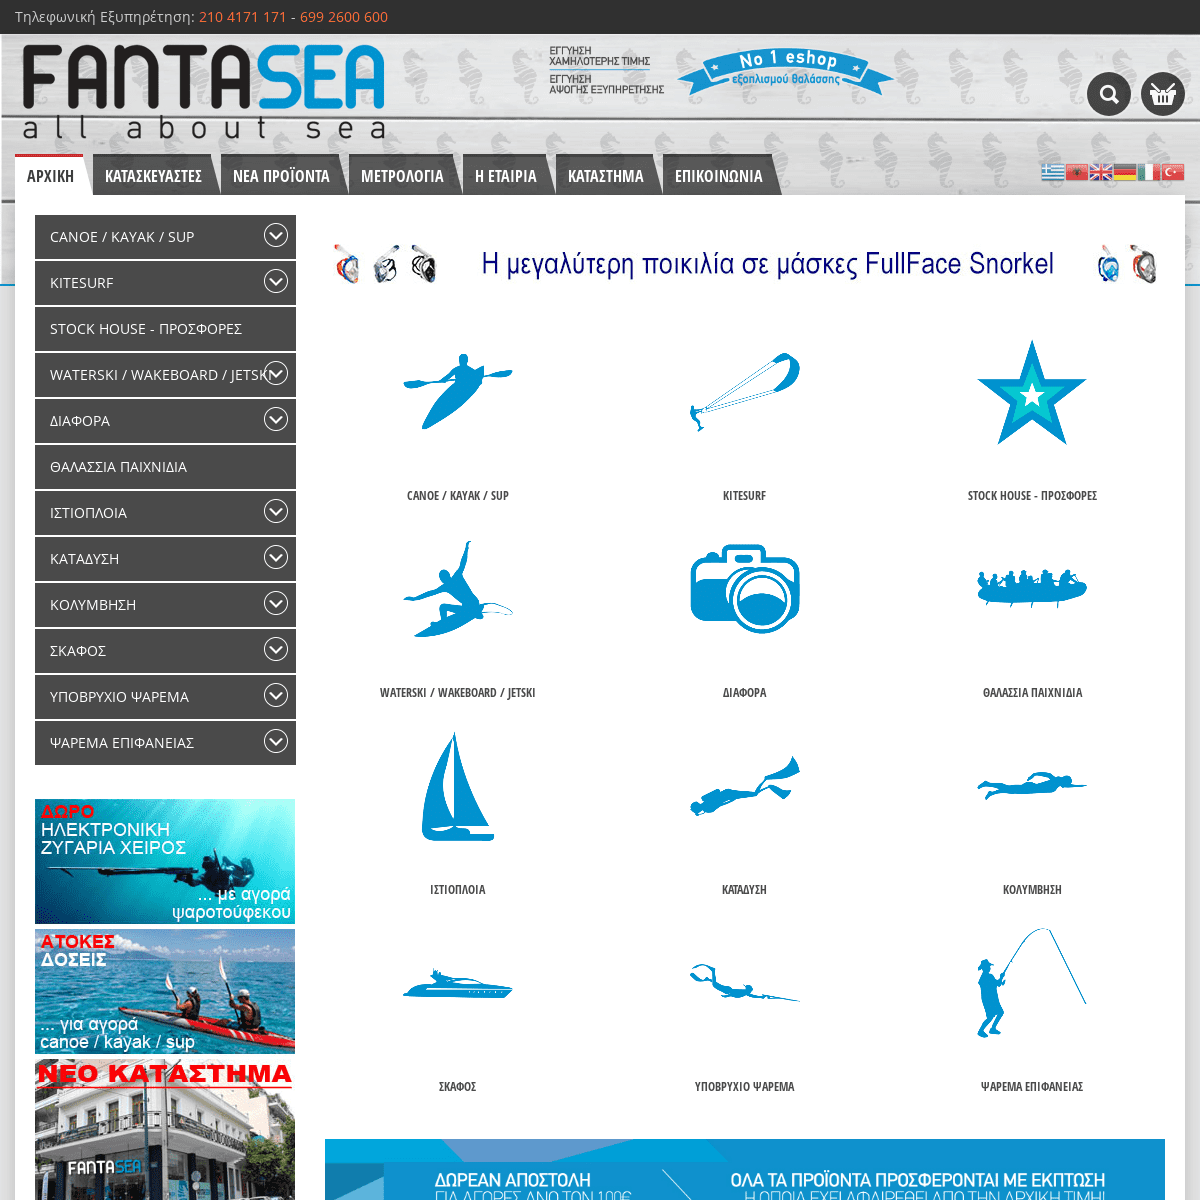 Fantasea, all about sea!